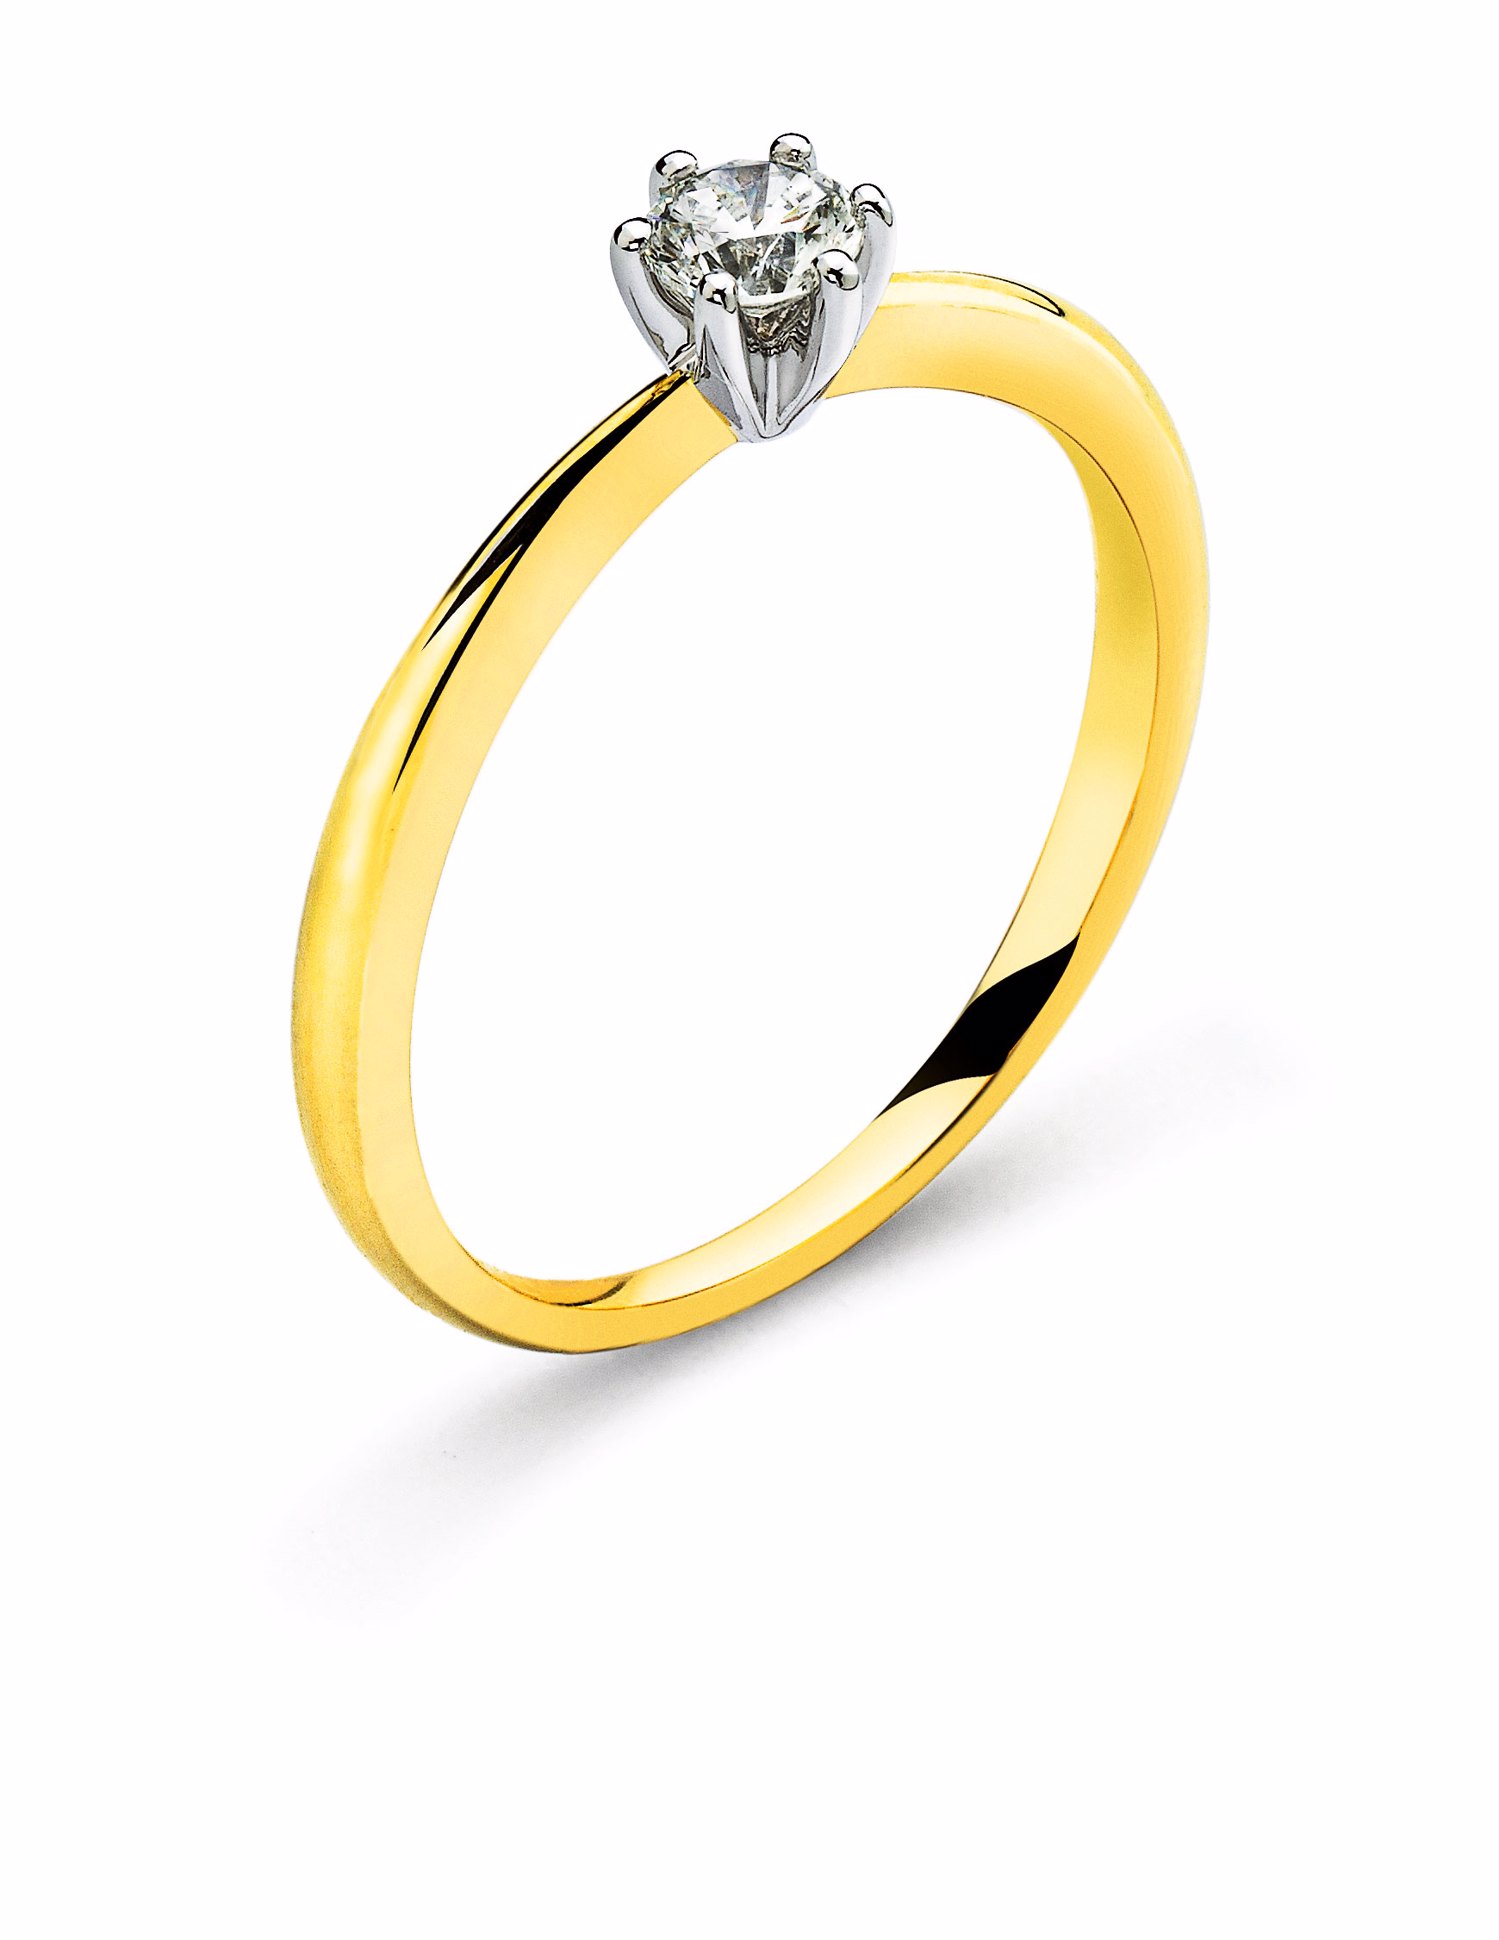 AURONOS Prestige Bague solitaire en or jaune 18K, sertie d'un diamant en or blanc 0.25ct